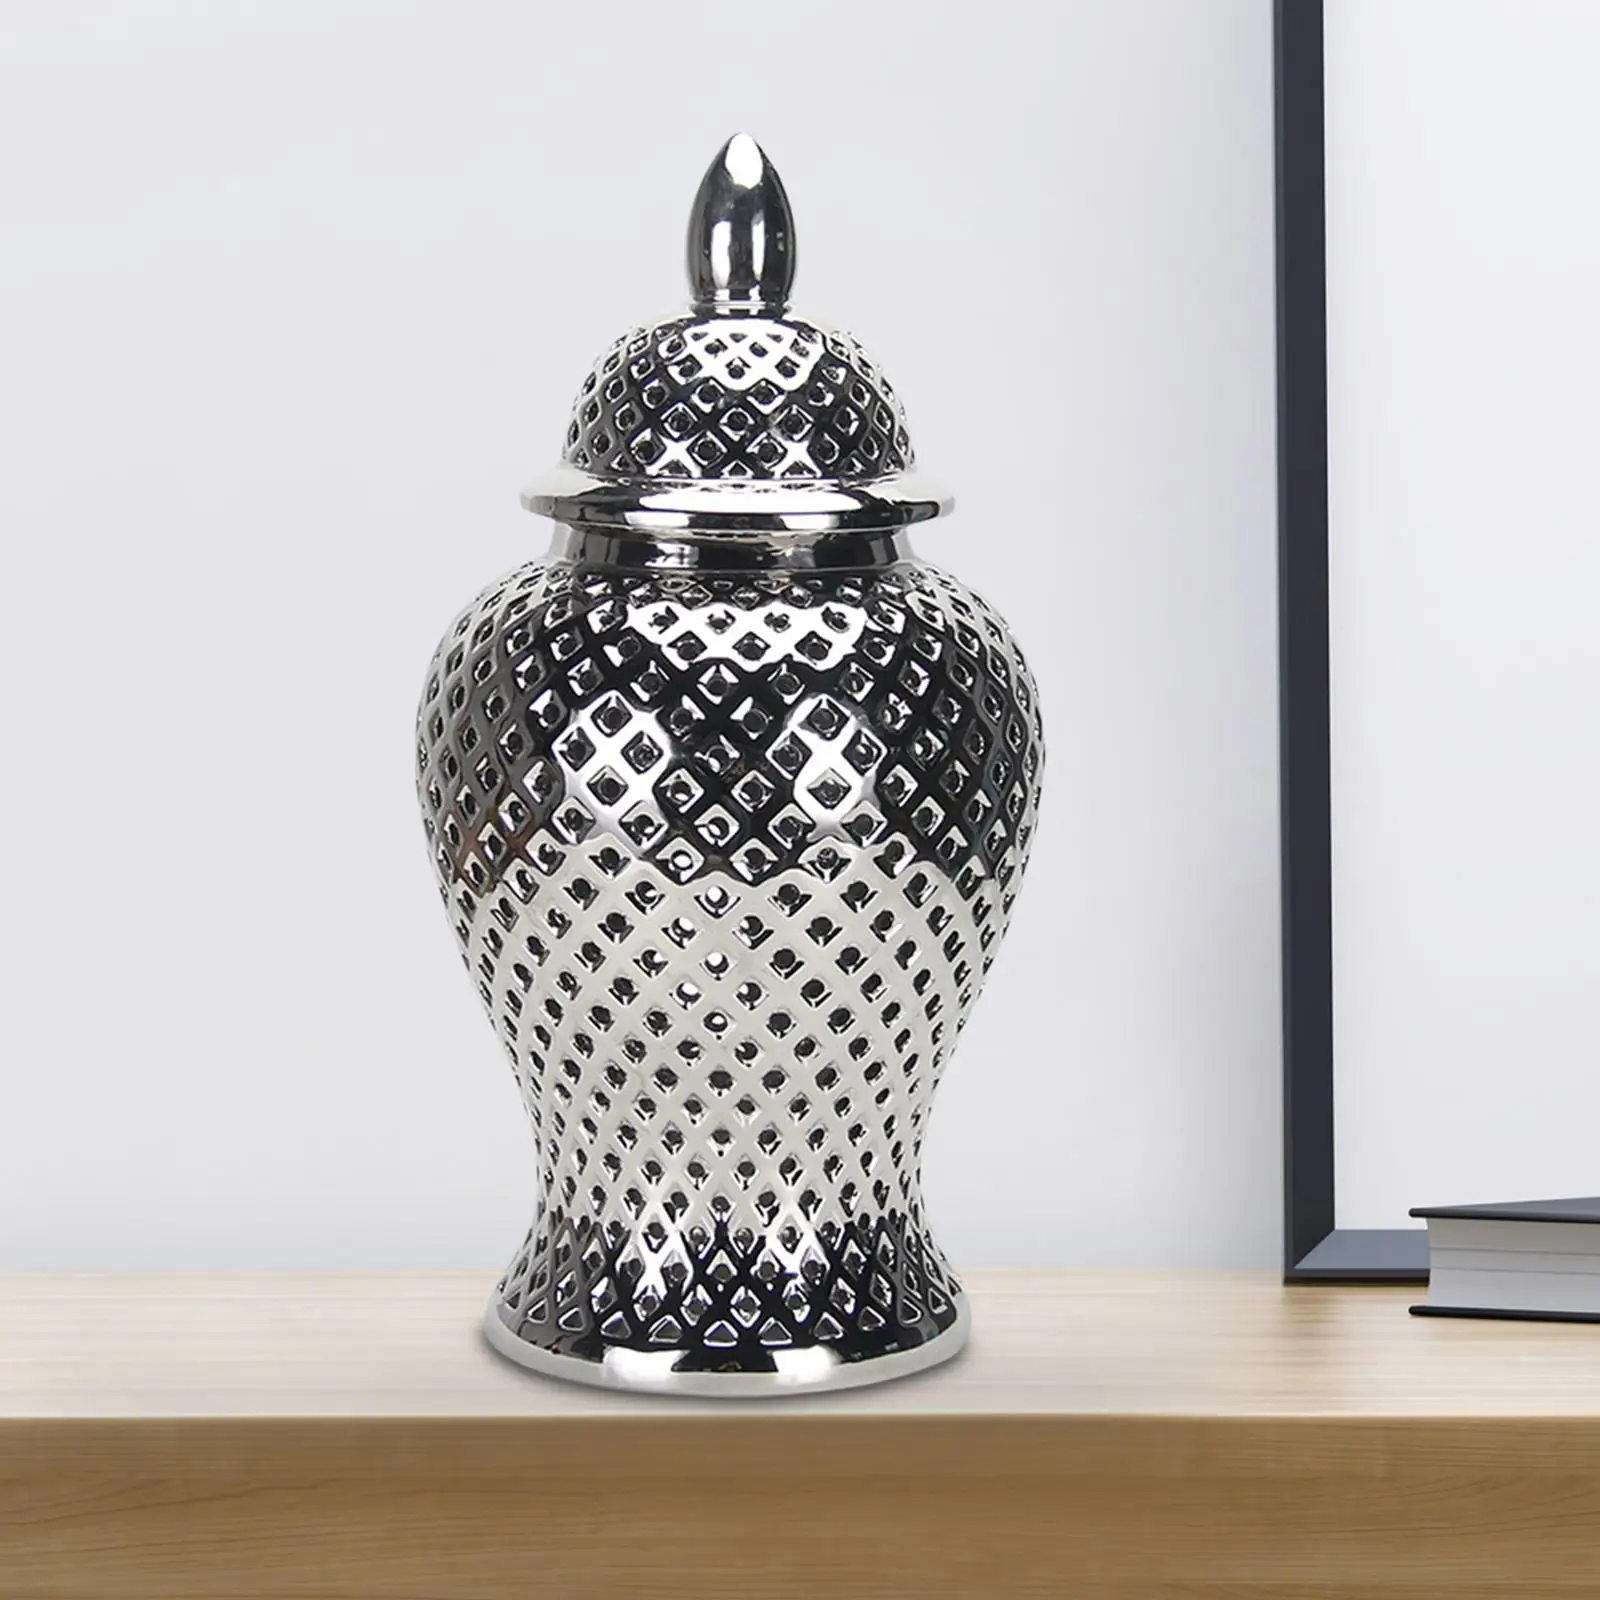 Ceramic Ginger Jar Multi Purpose Luxury Floral Arrangement Storage Decorative